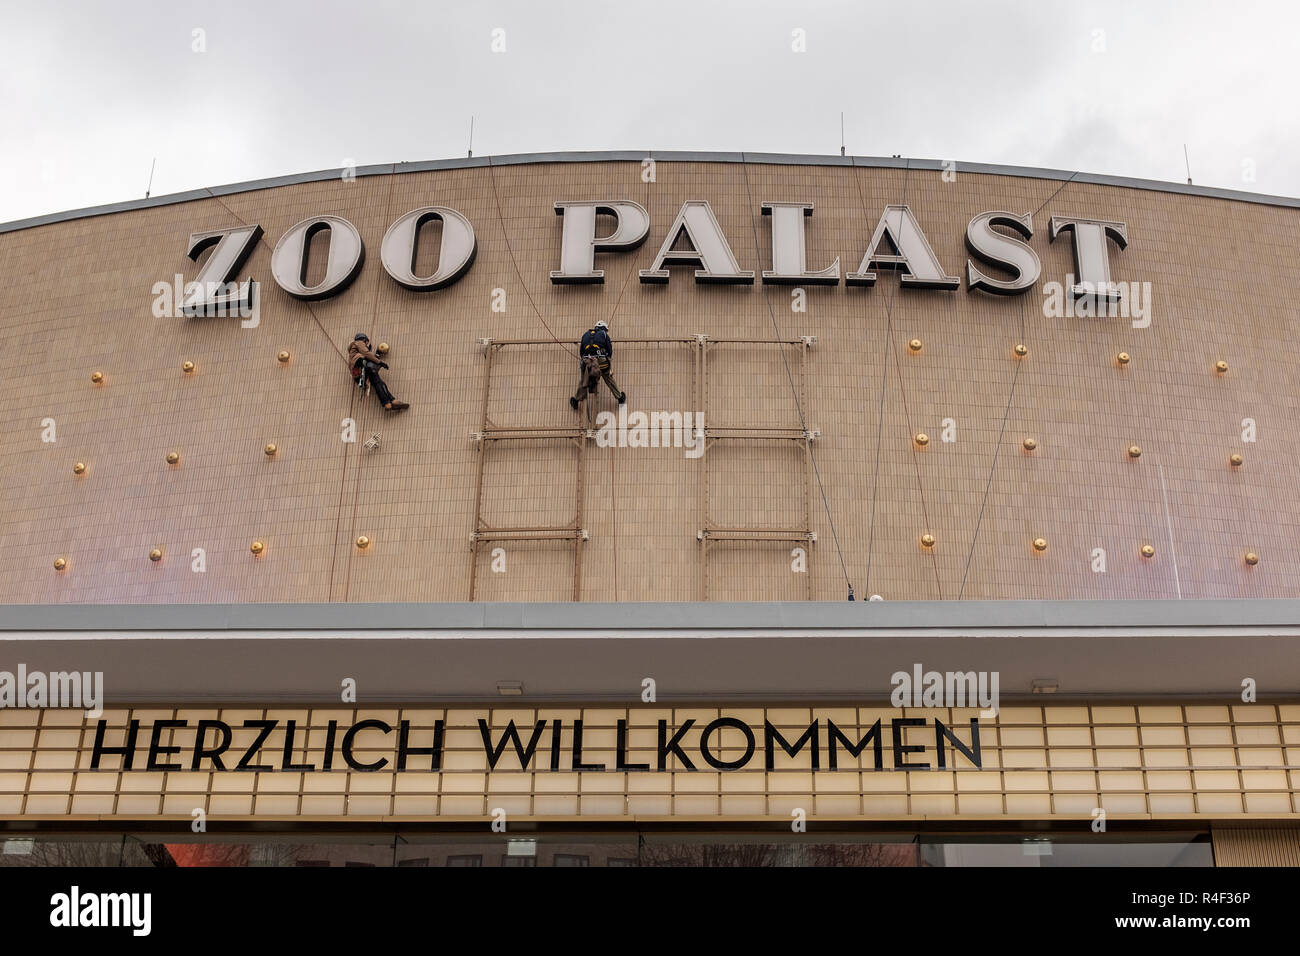 Alemania,Berlín Zoo Palast Cine- trabajadores preparando la fachada de cine de la Berlinale- Internation Festival de Cine Foto de stock